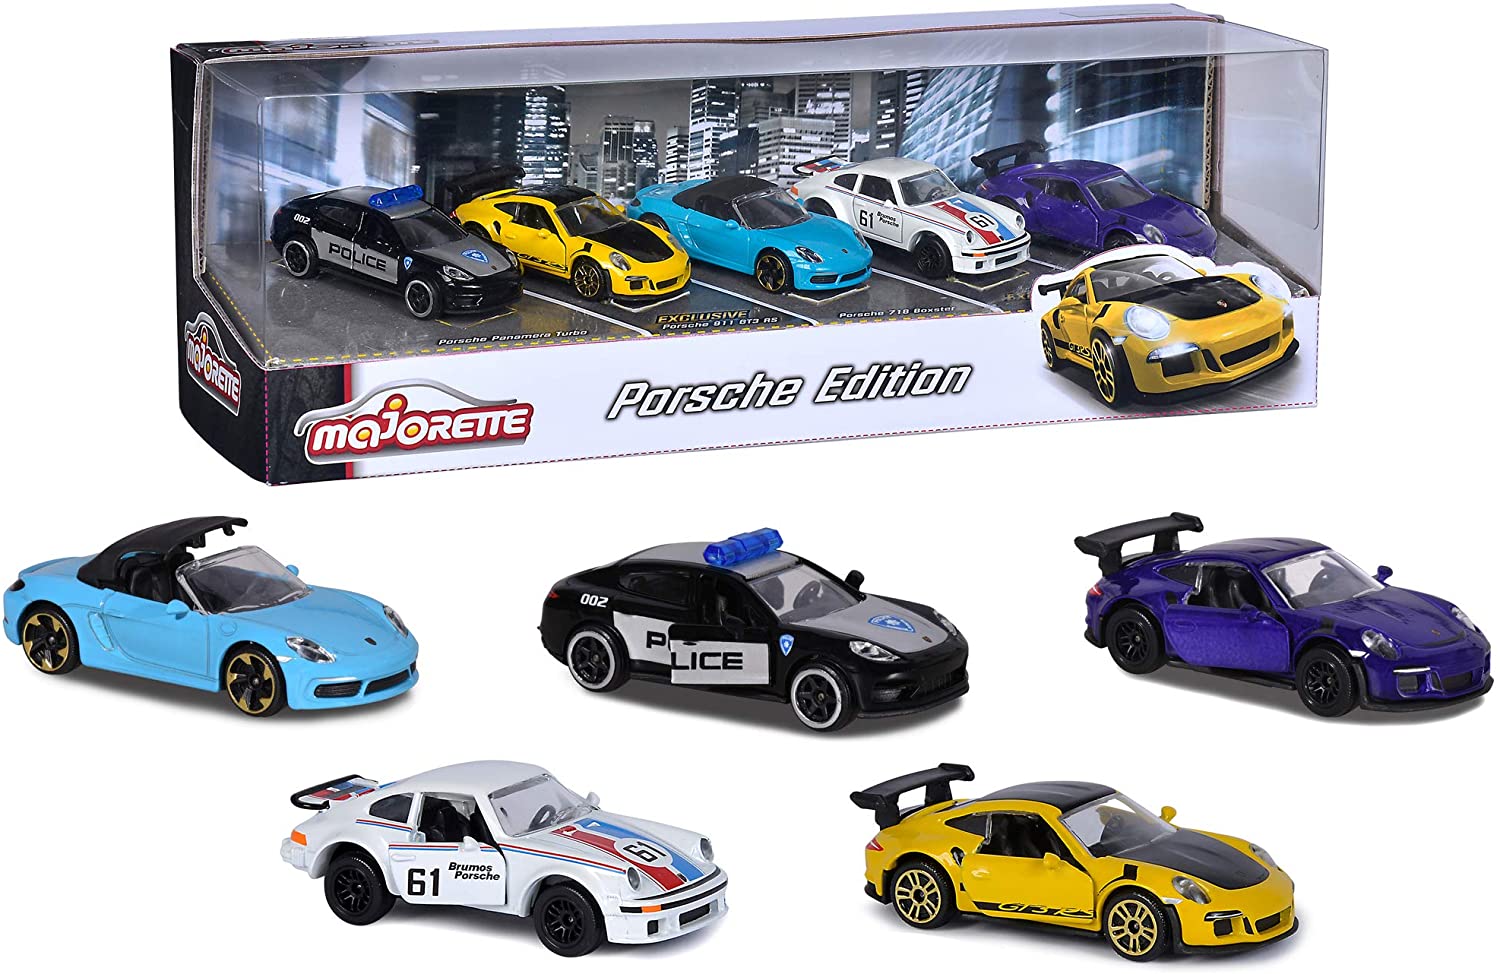 Majorette Porsche 911 Gt3 Rs Car Gift Set 5 Vehicles With Suspension Toys P